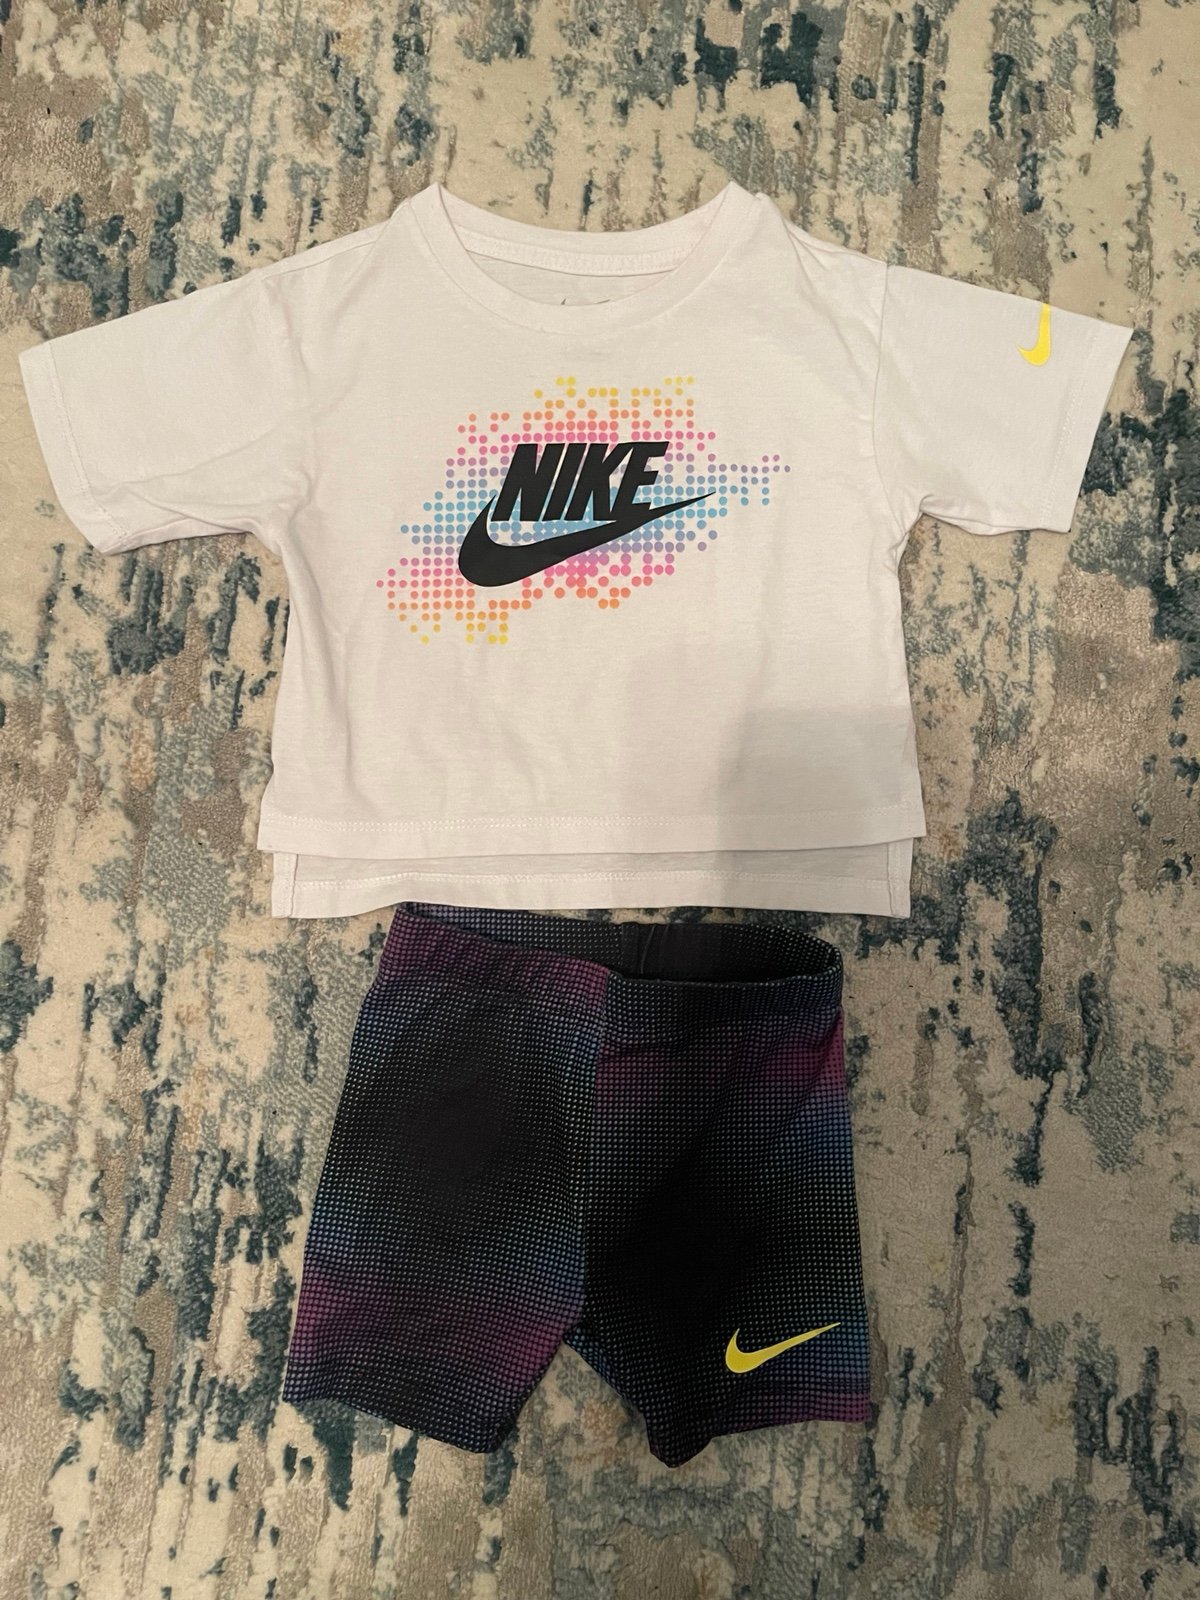 Nike toddler girl set I5HOQVKaA